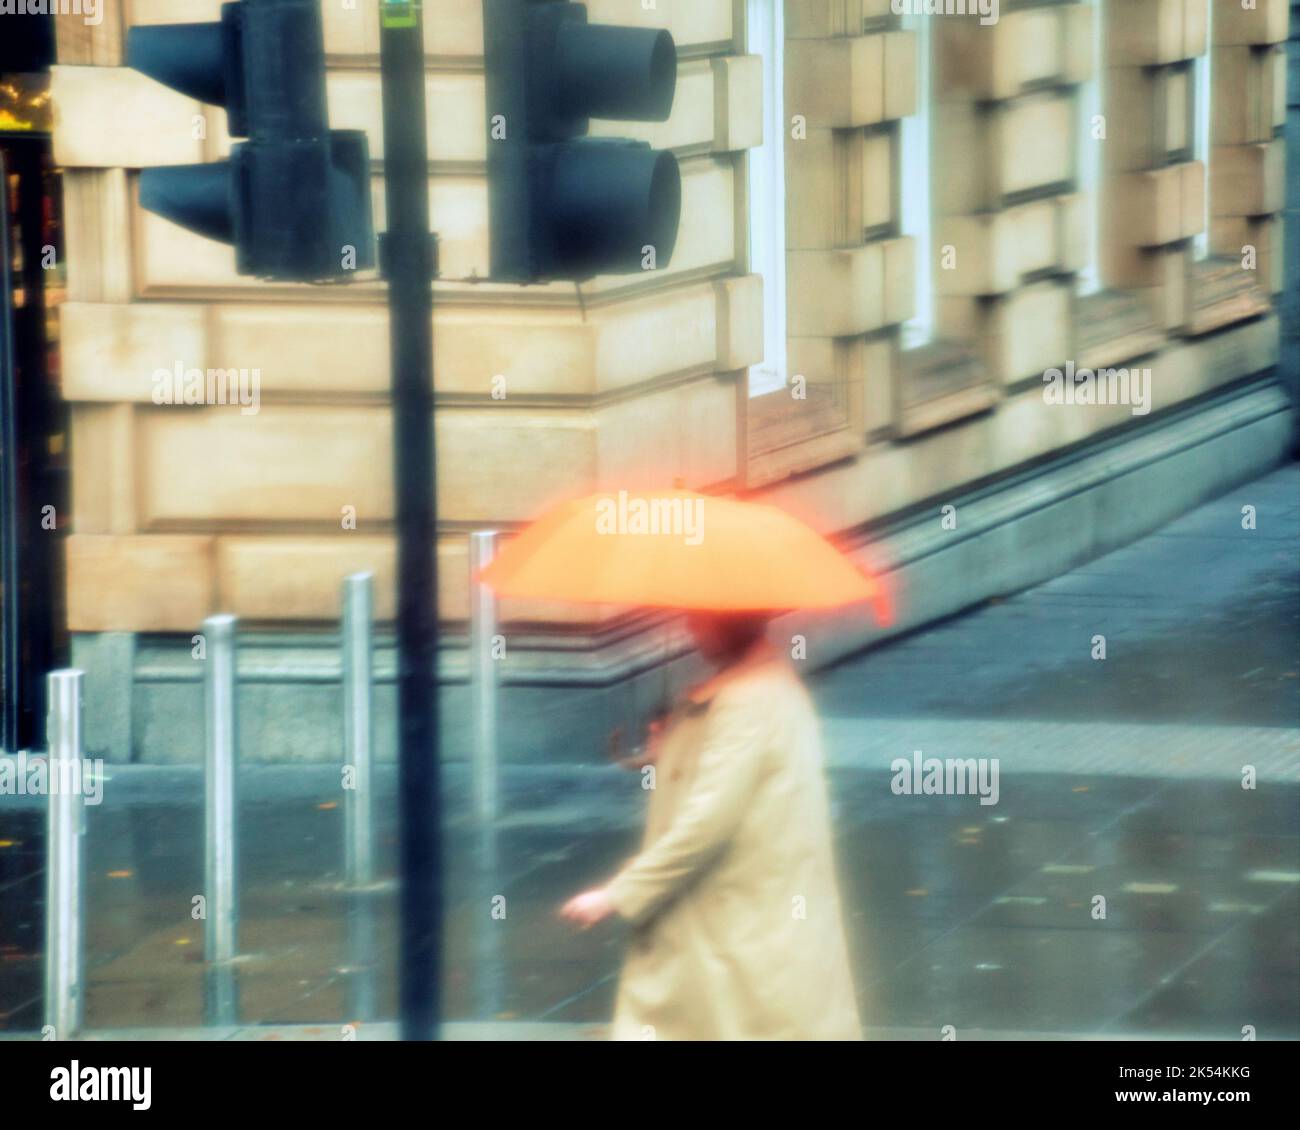 raining wet weather on Buchannan street sees umbrellas Stock Photo